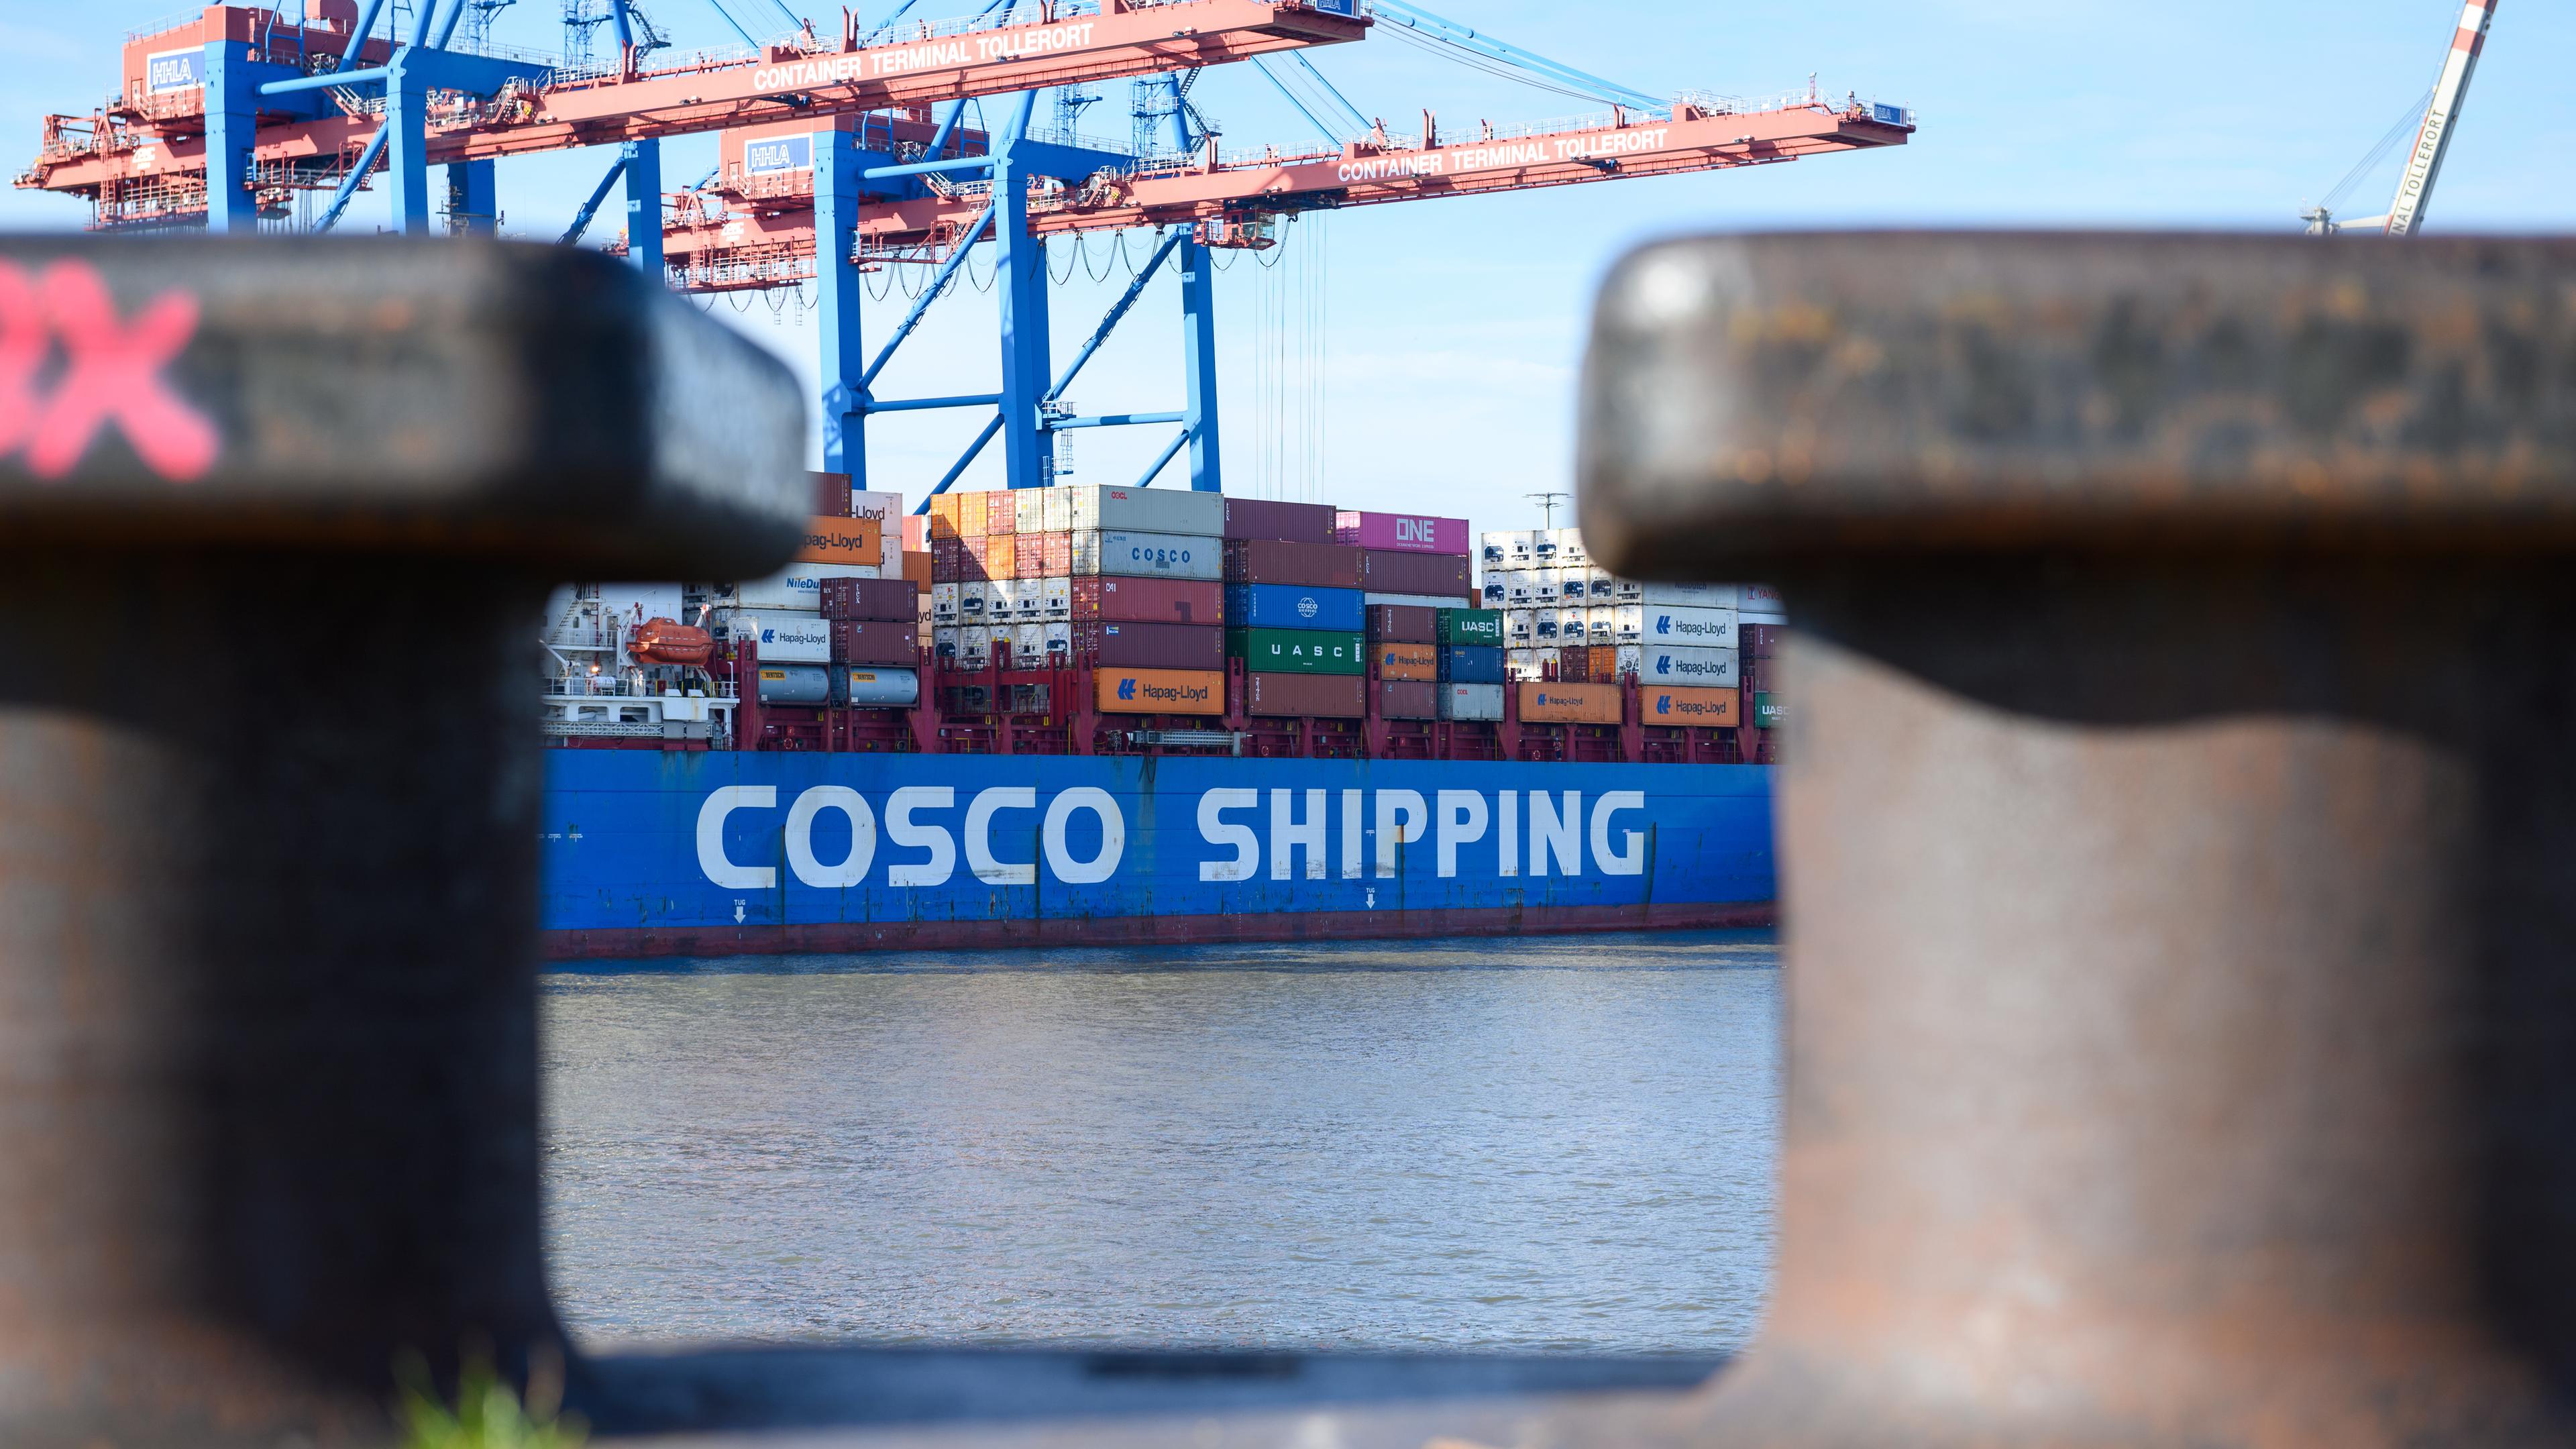 Das Bild zeigt ein Containerschiff der chinesischen Reederei Cosco im Hamburger Hafen